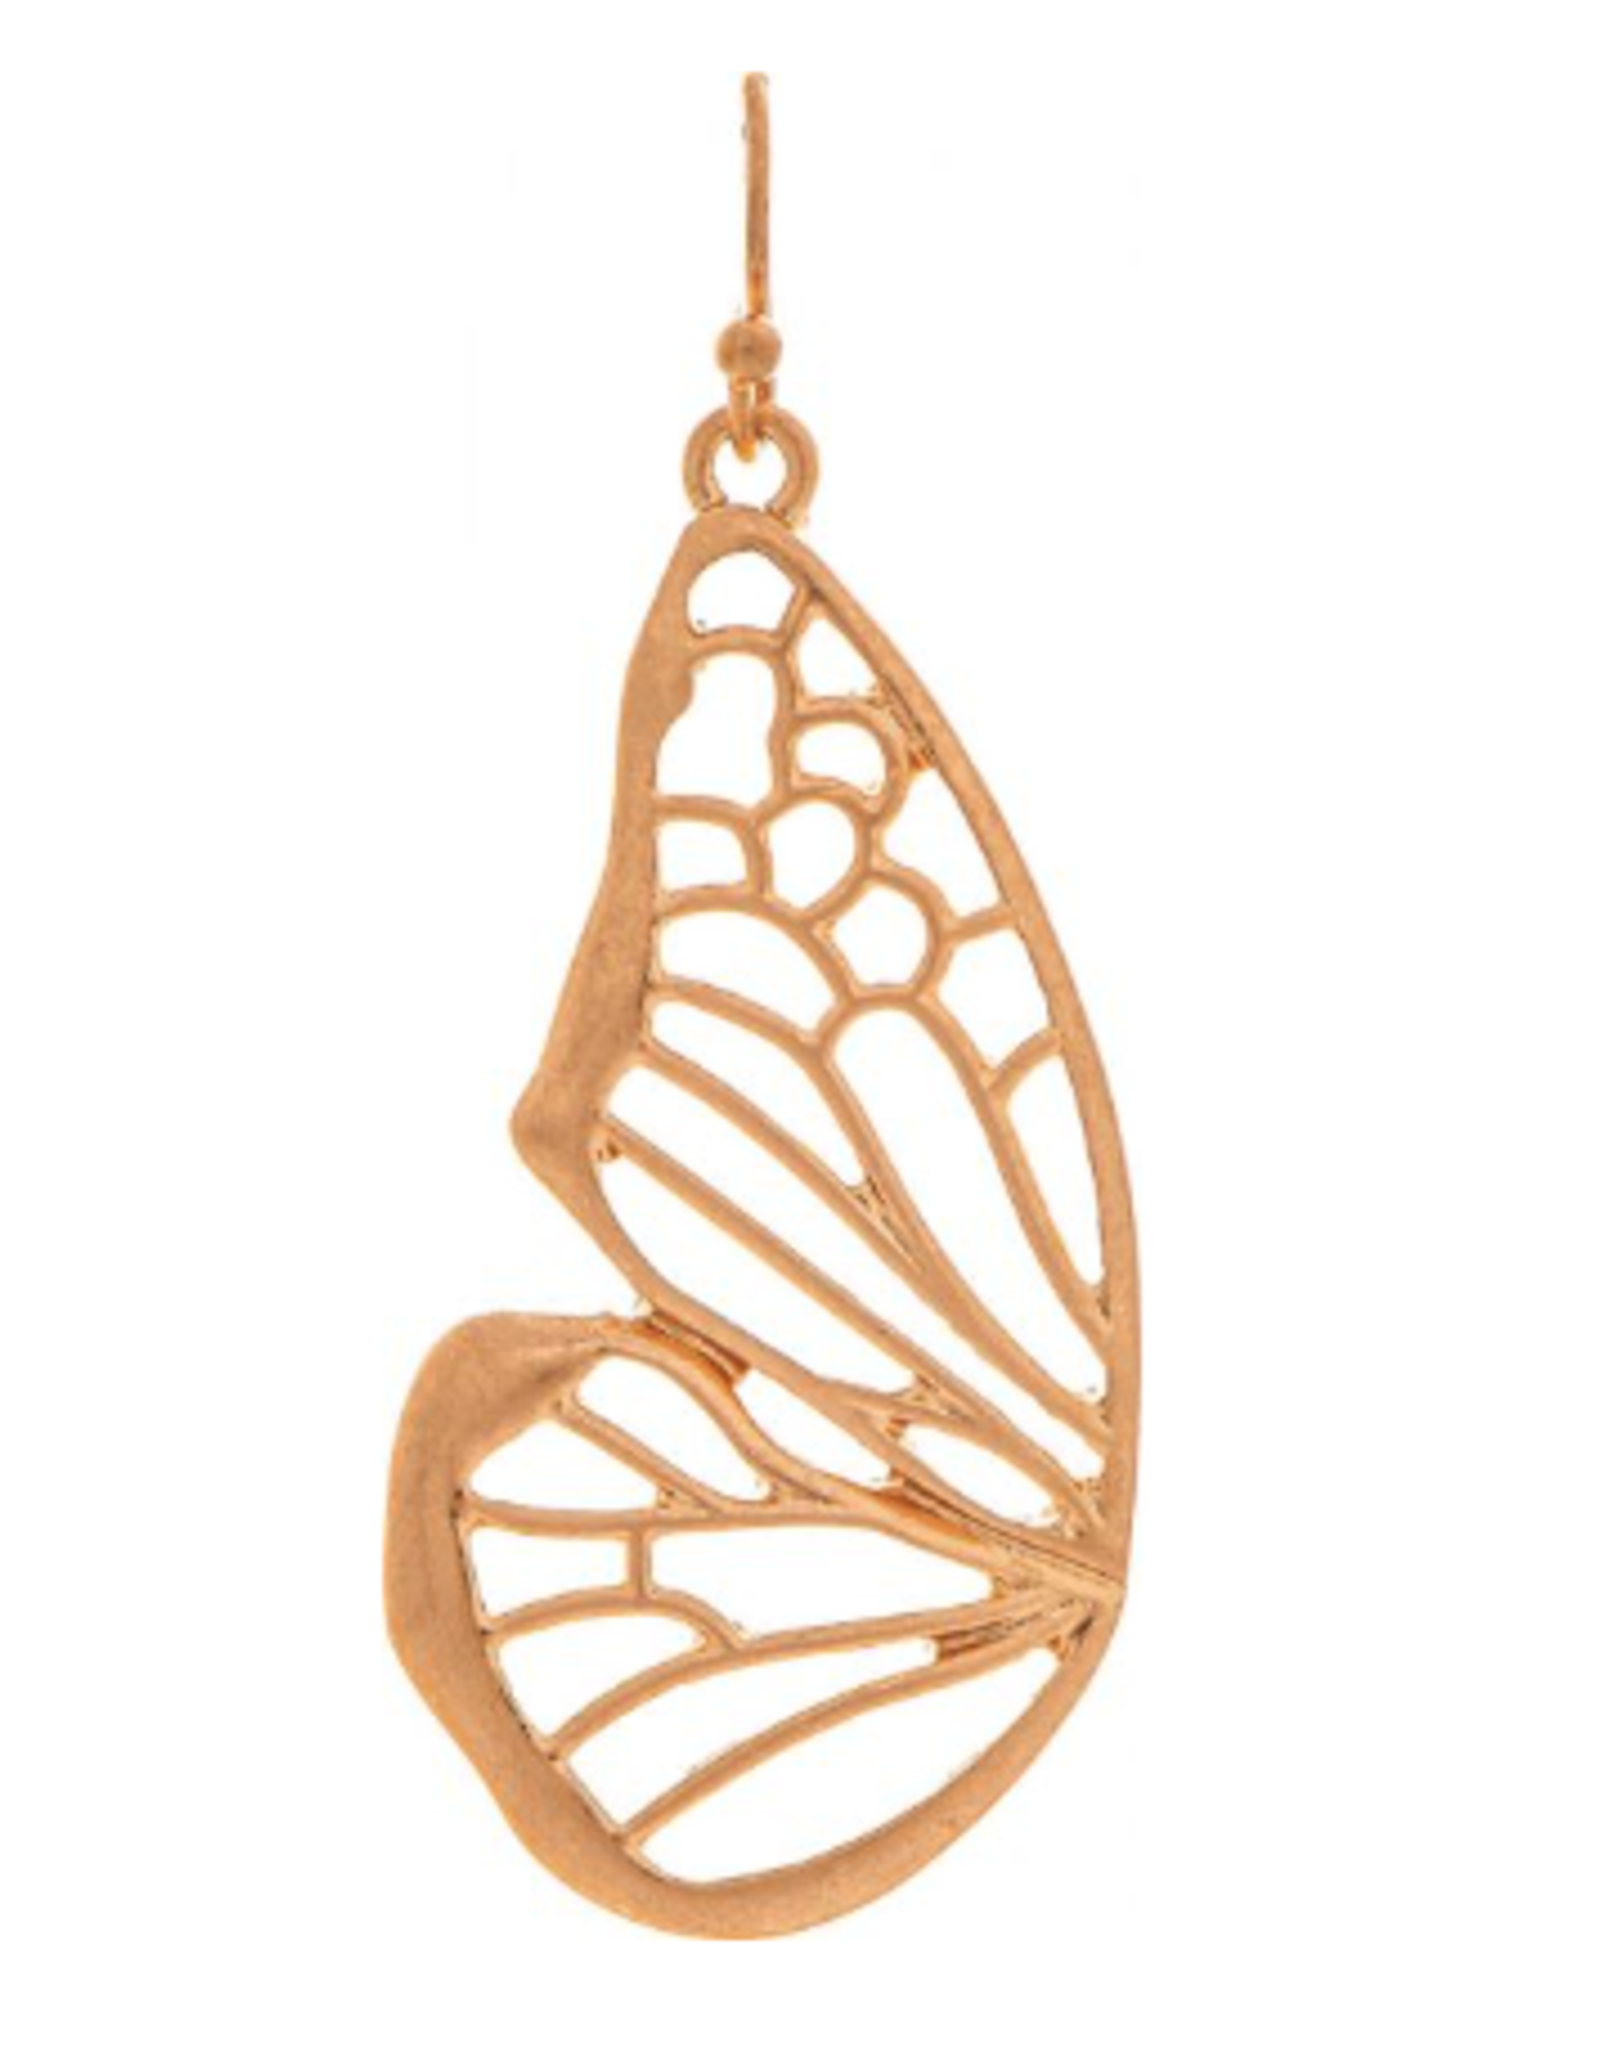 Rain: Matte Gold Butterfly Wings Earrings